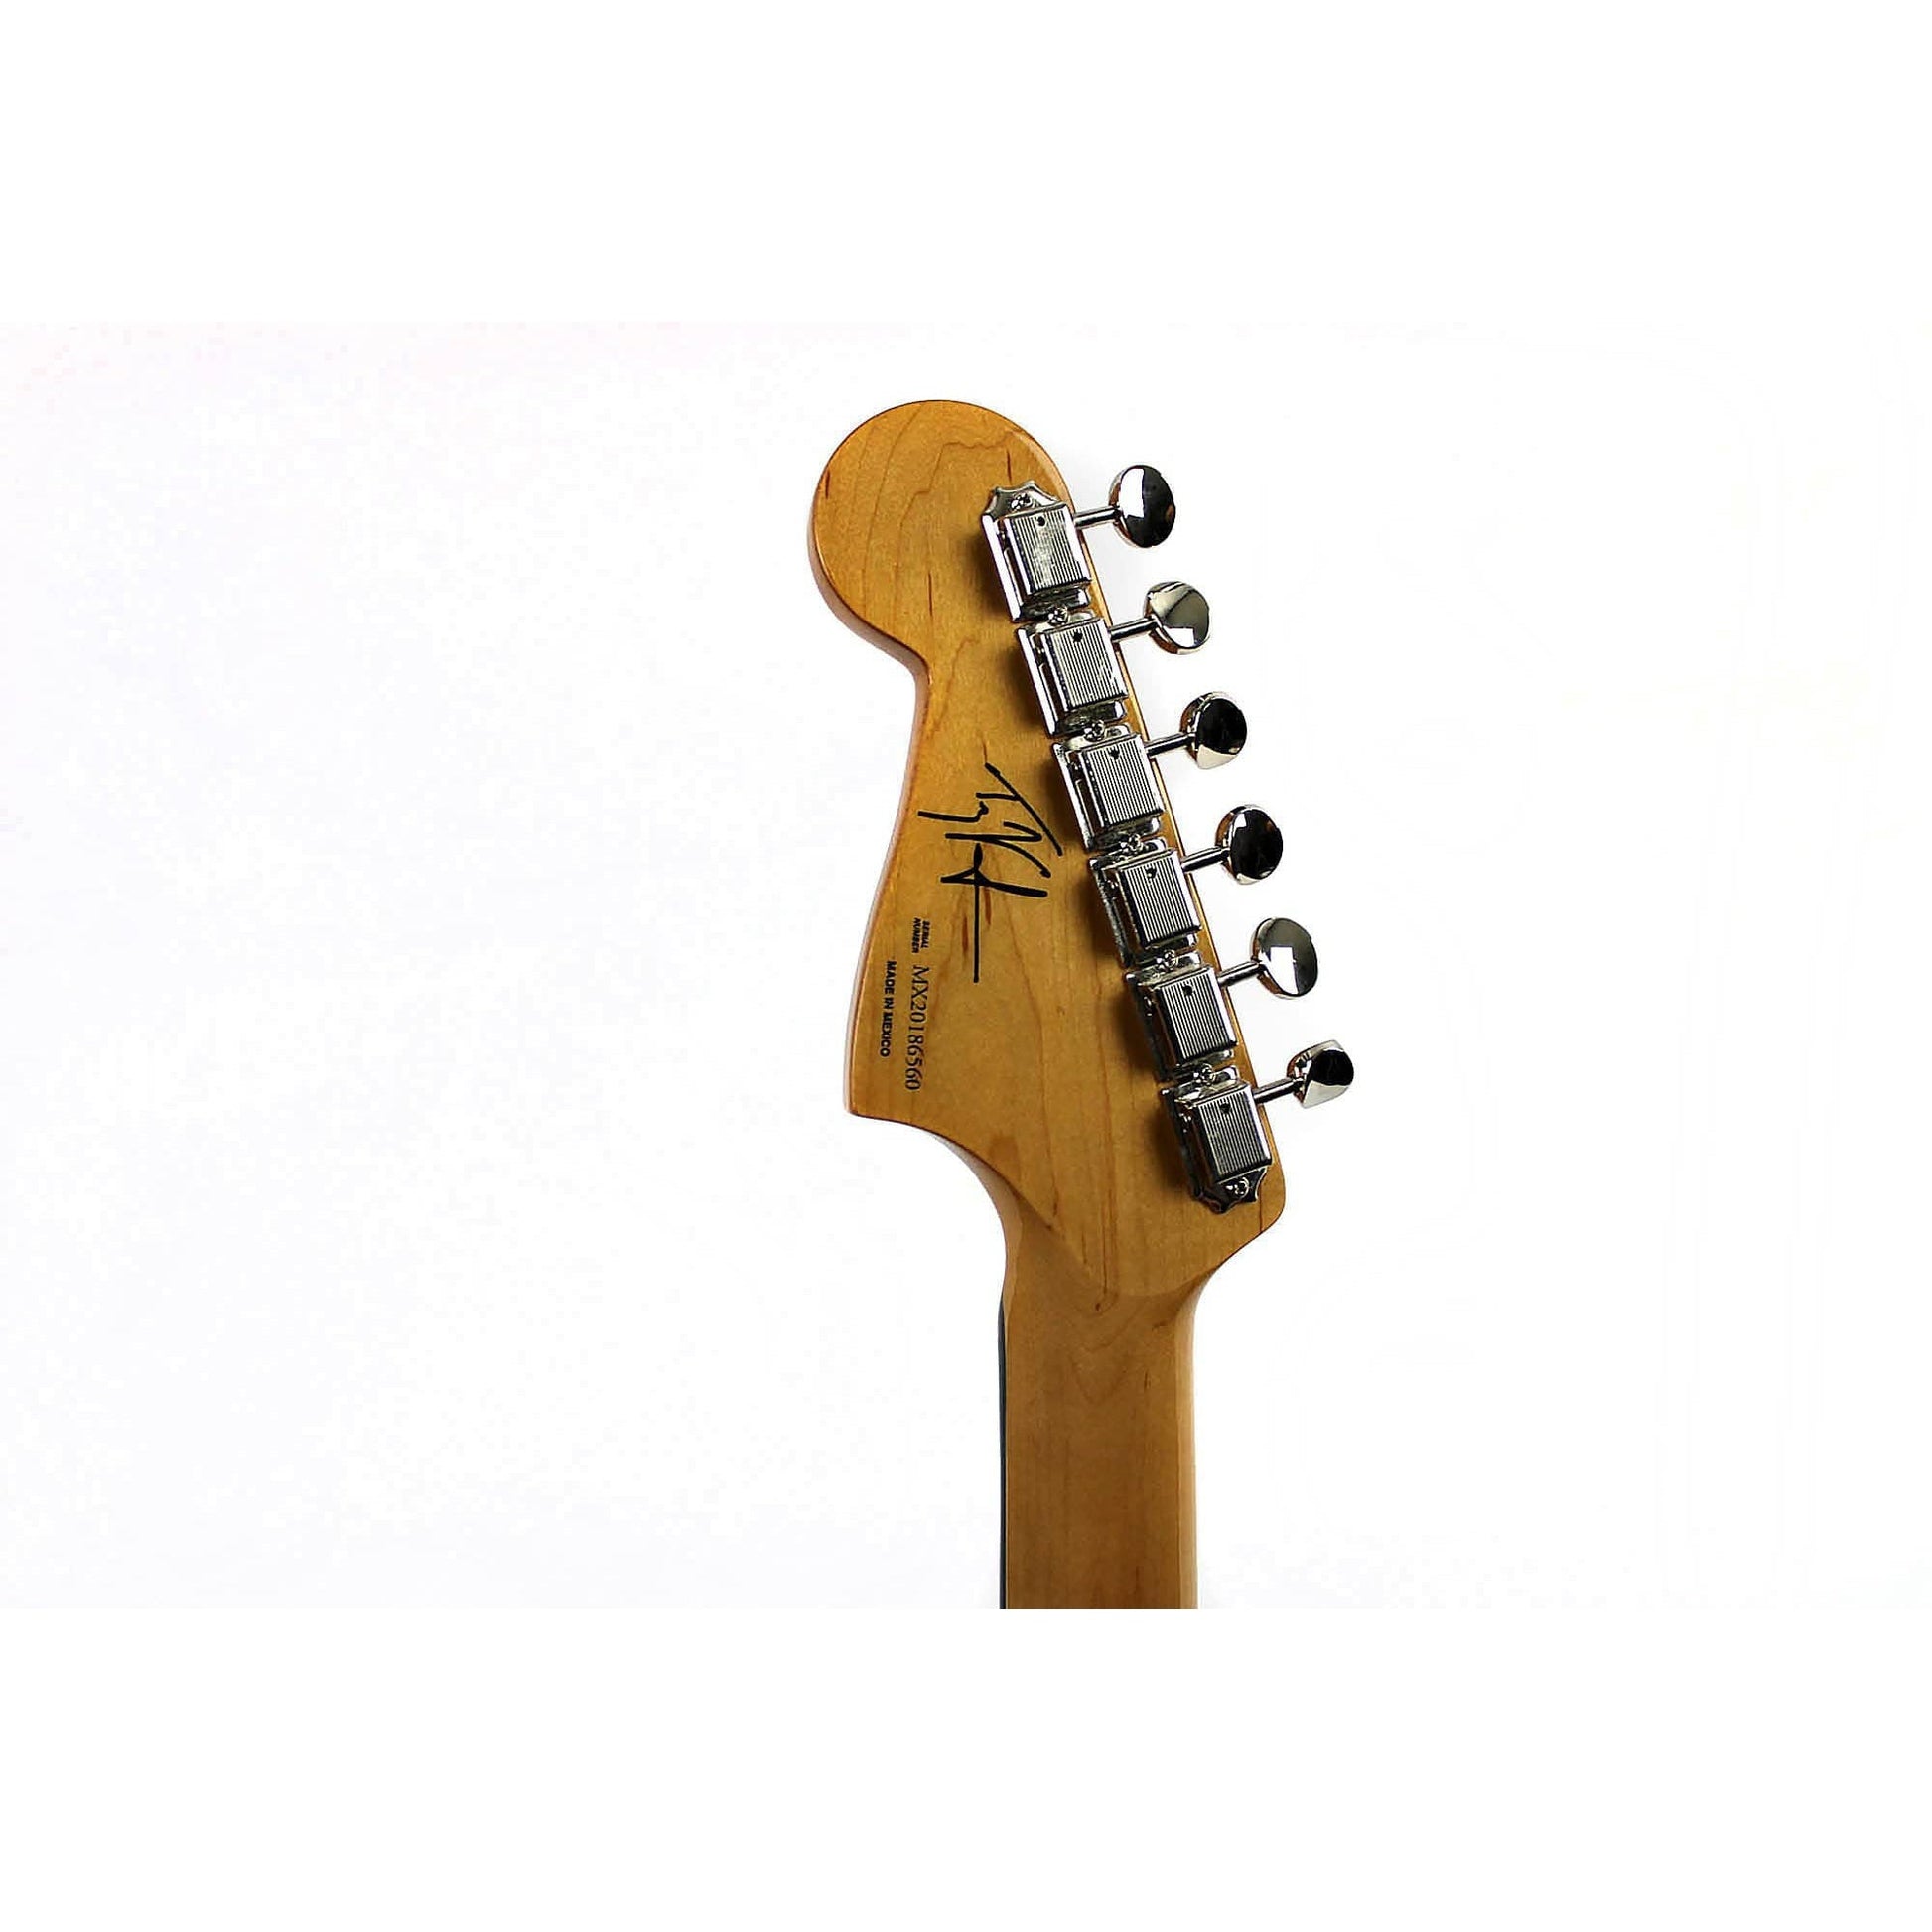 Fender Troy Van Leeuwen Jazzmaster Copper Age w/ case - Leitz Music-885978437245-0140072794